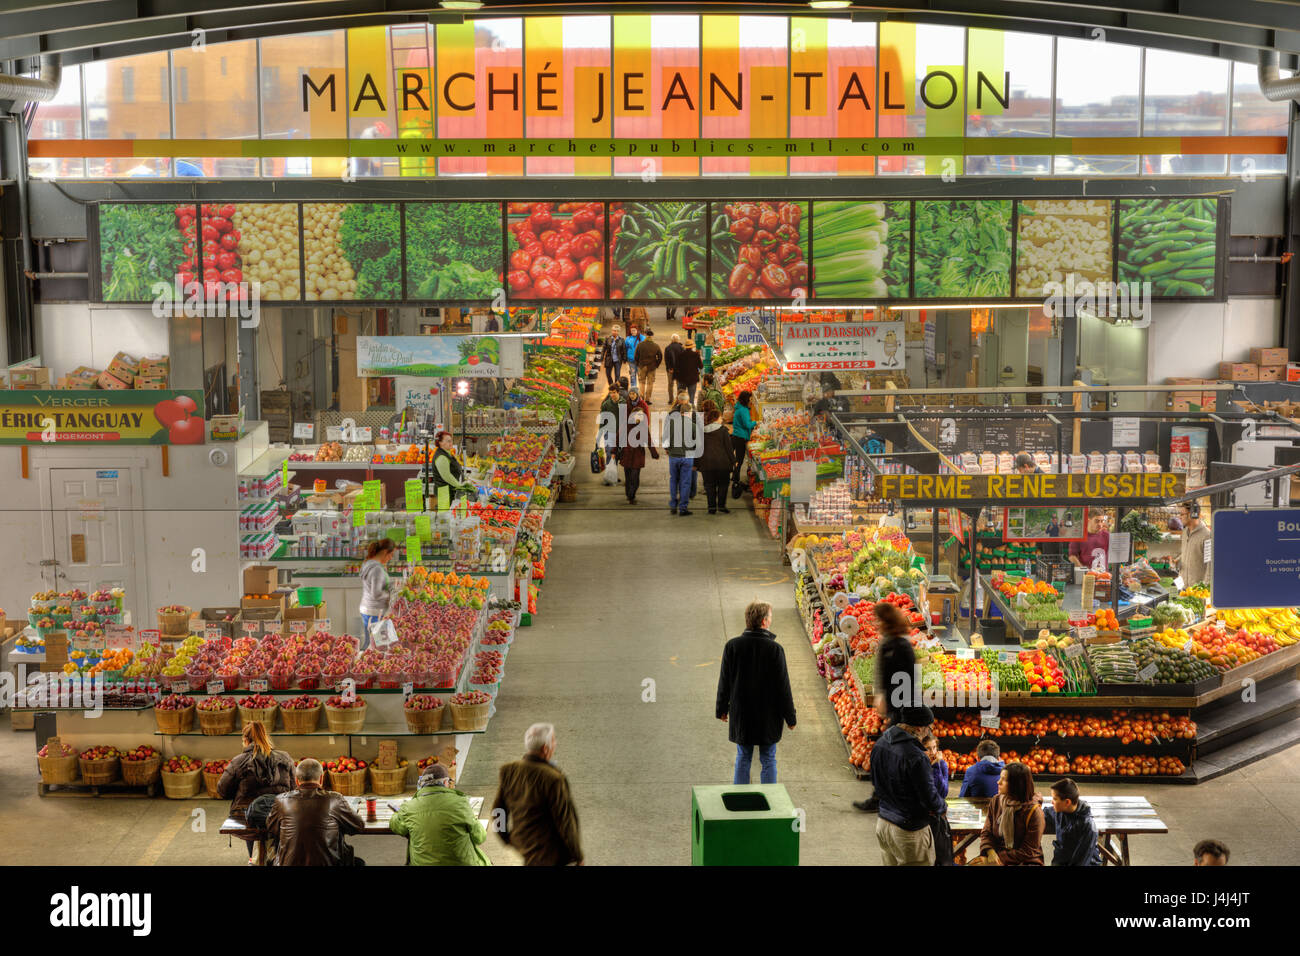 Marché Jean-Talon, un mercato nella Petite Italie (Little Italy), Montreal, Quebec, Canada. Foto Stock